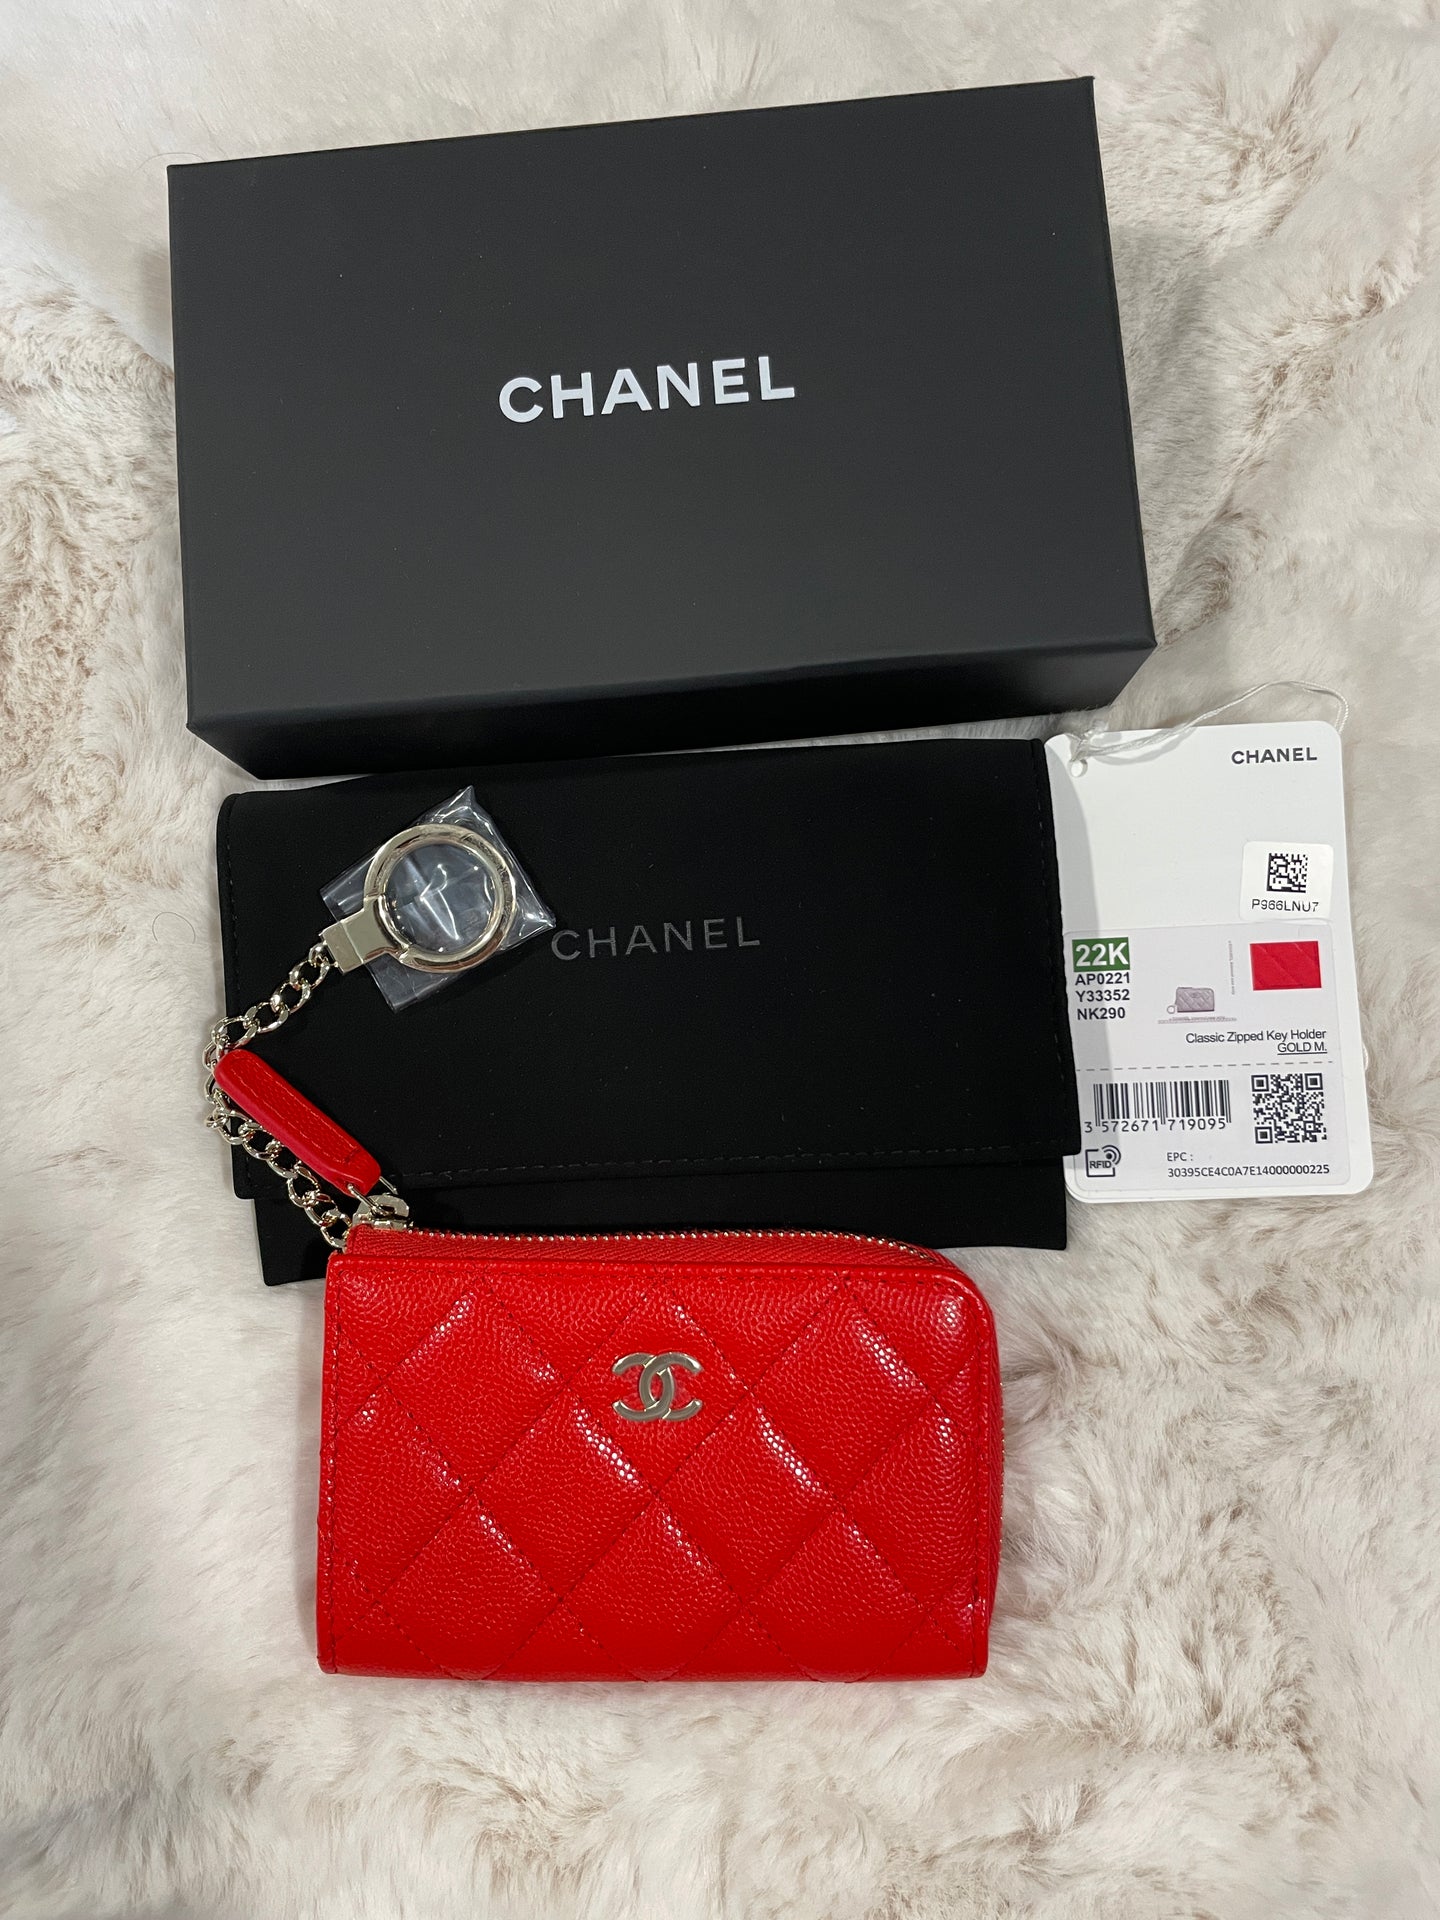 Chanel 22K Red Caviar Key Wallet